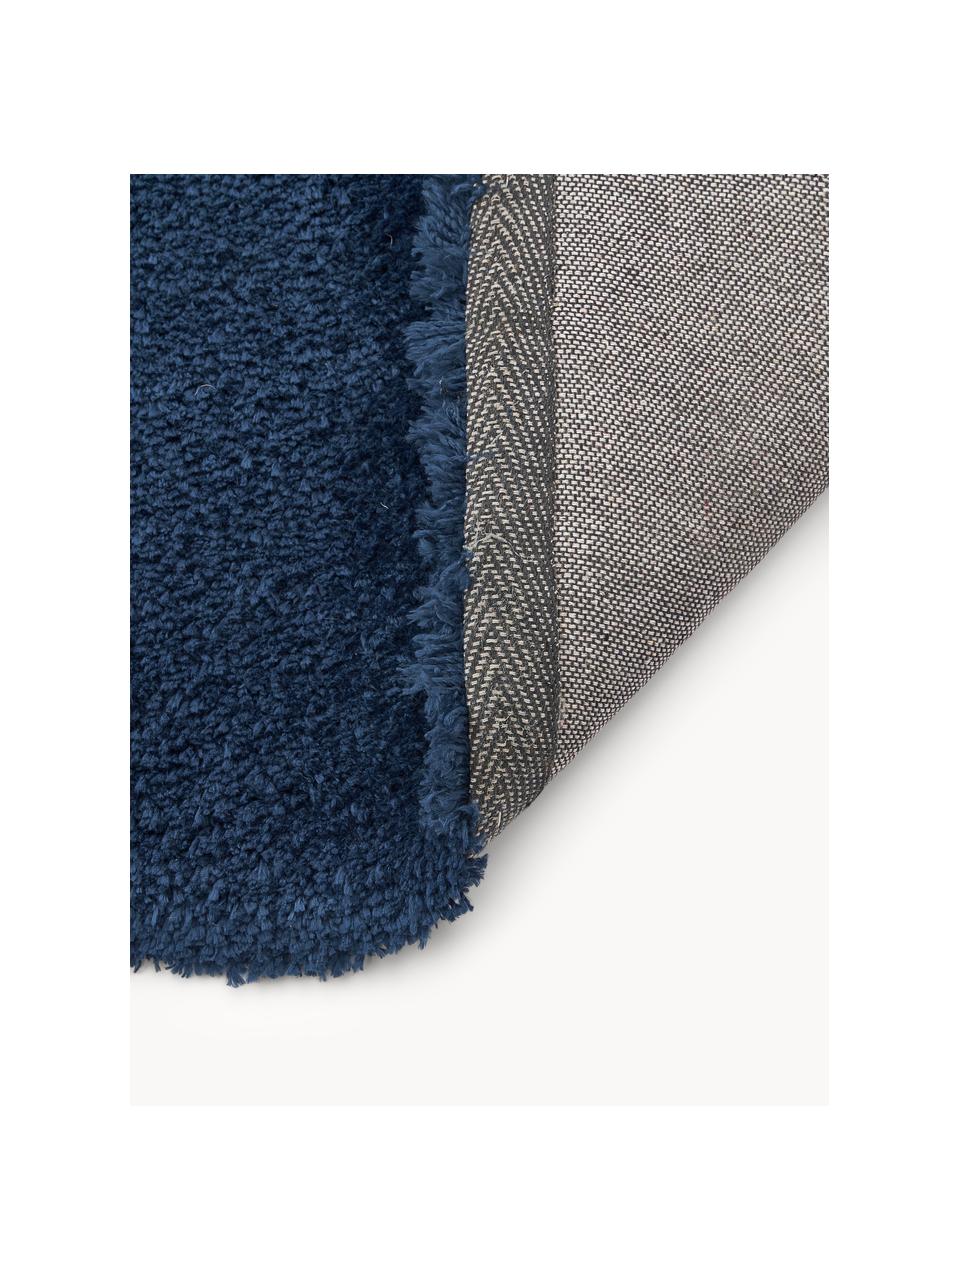 Puszysty dywan z długim włosiem Leighton, Ciemny niebieski, S 120 x D 180 cm (Rozmiar S)